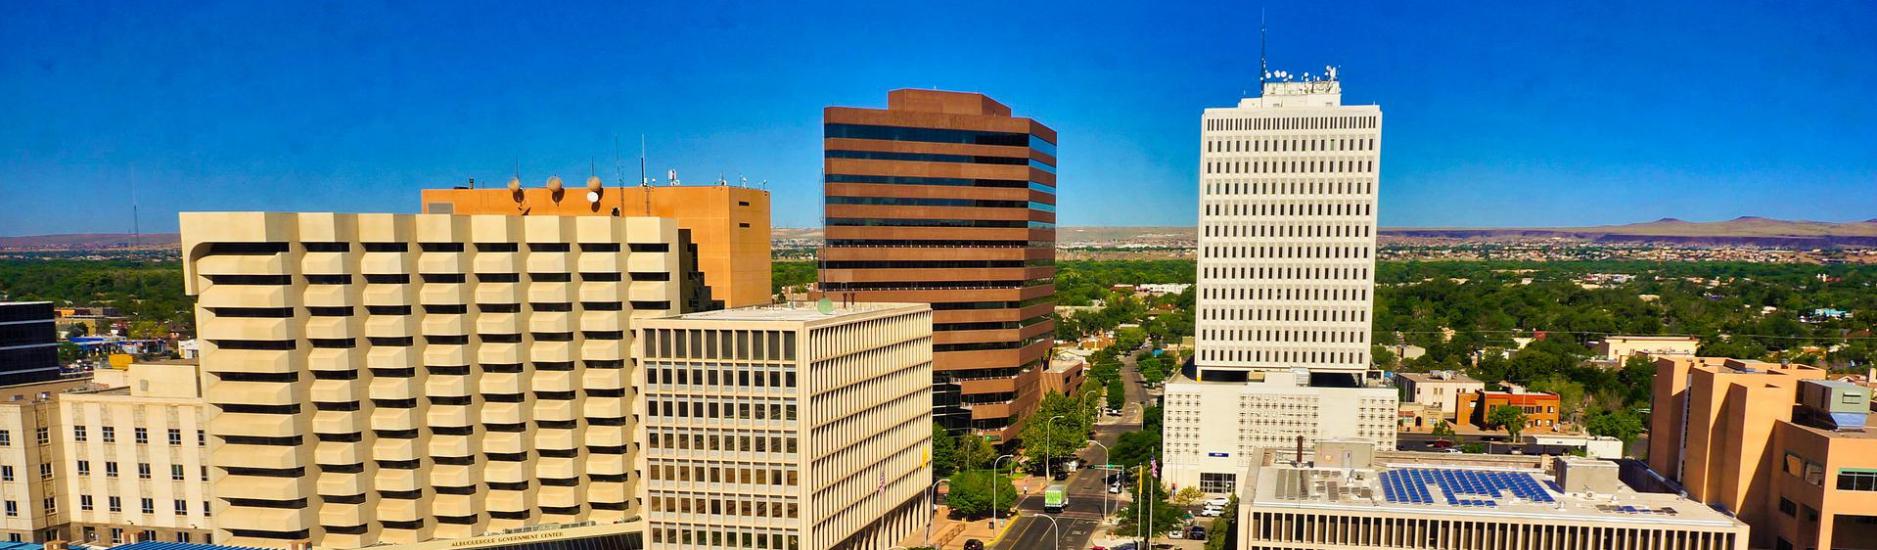 Albuquerque, USA